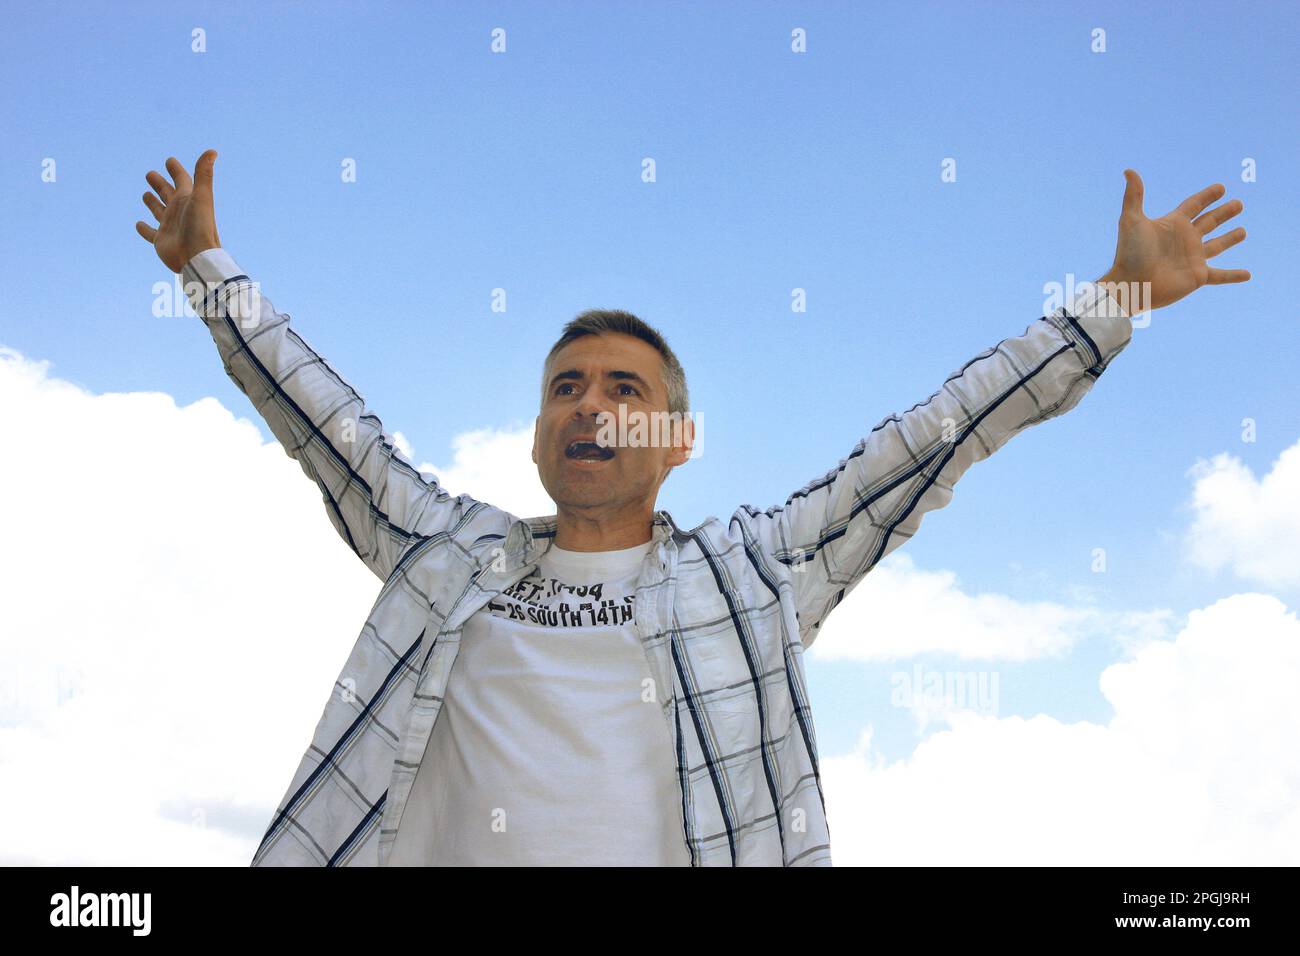 homme levant ses bras dans l'air en jubilation, vue de face Banque D'Images